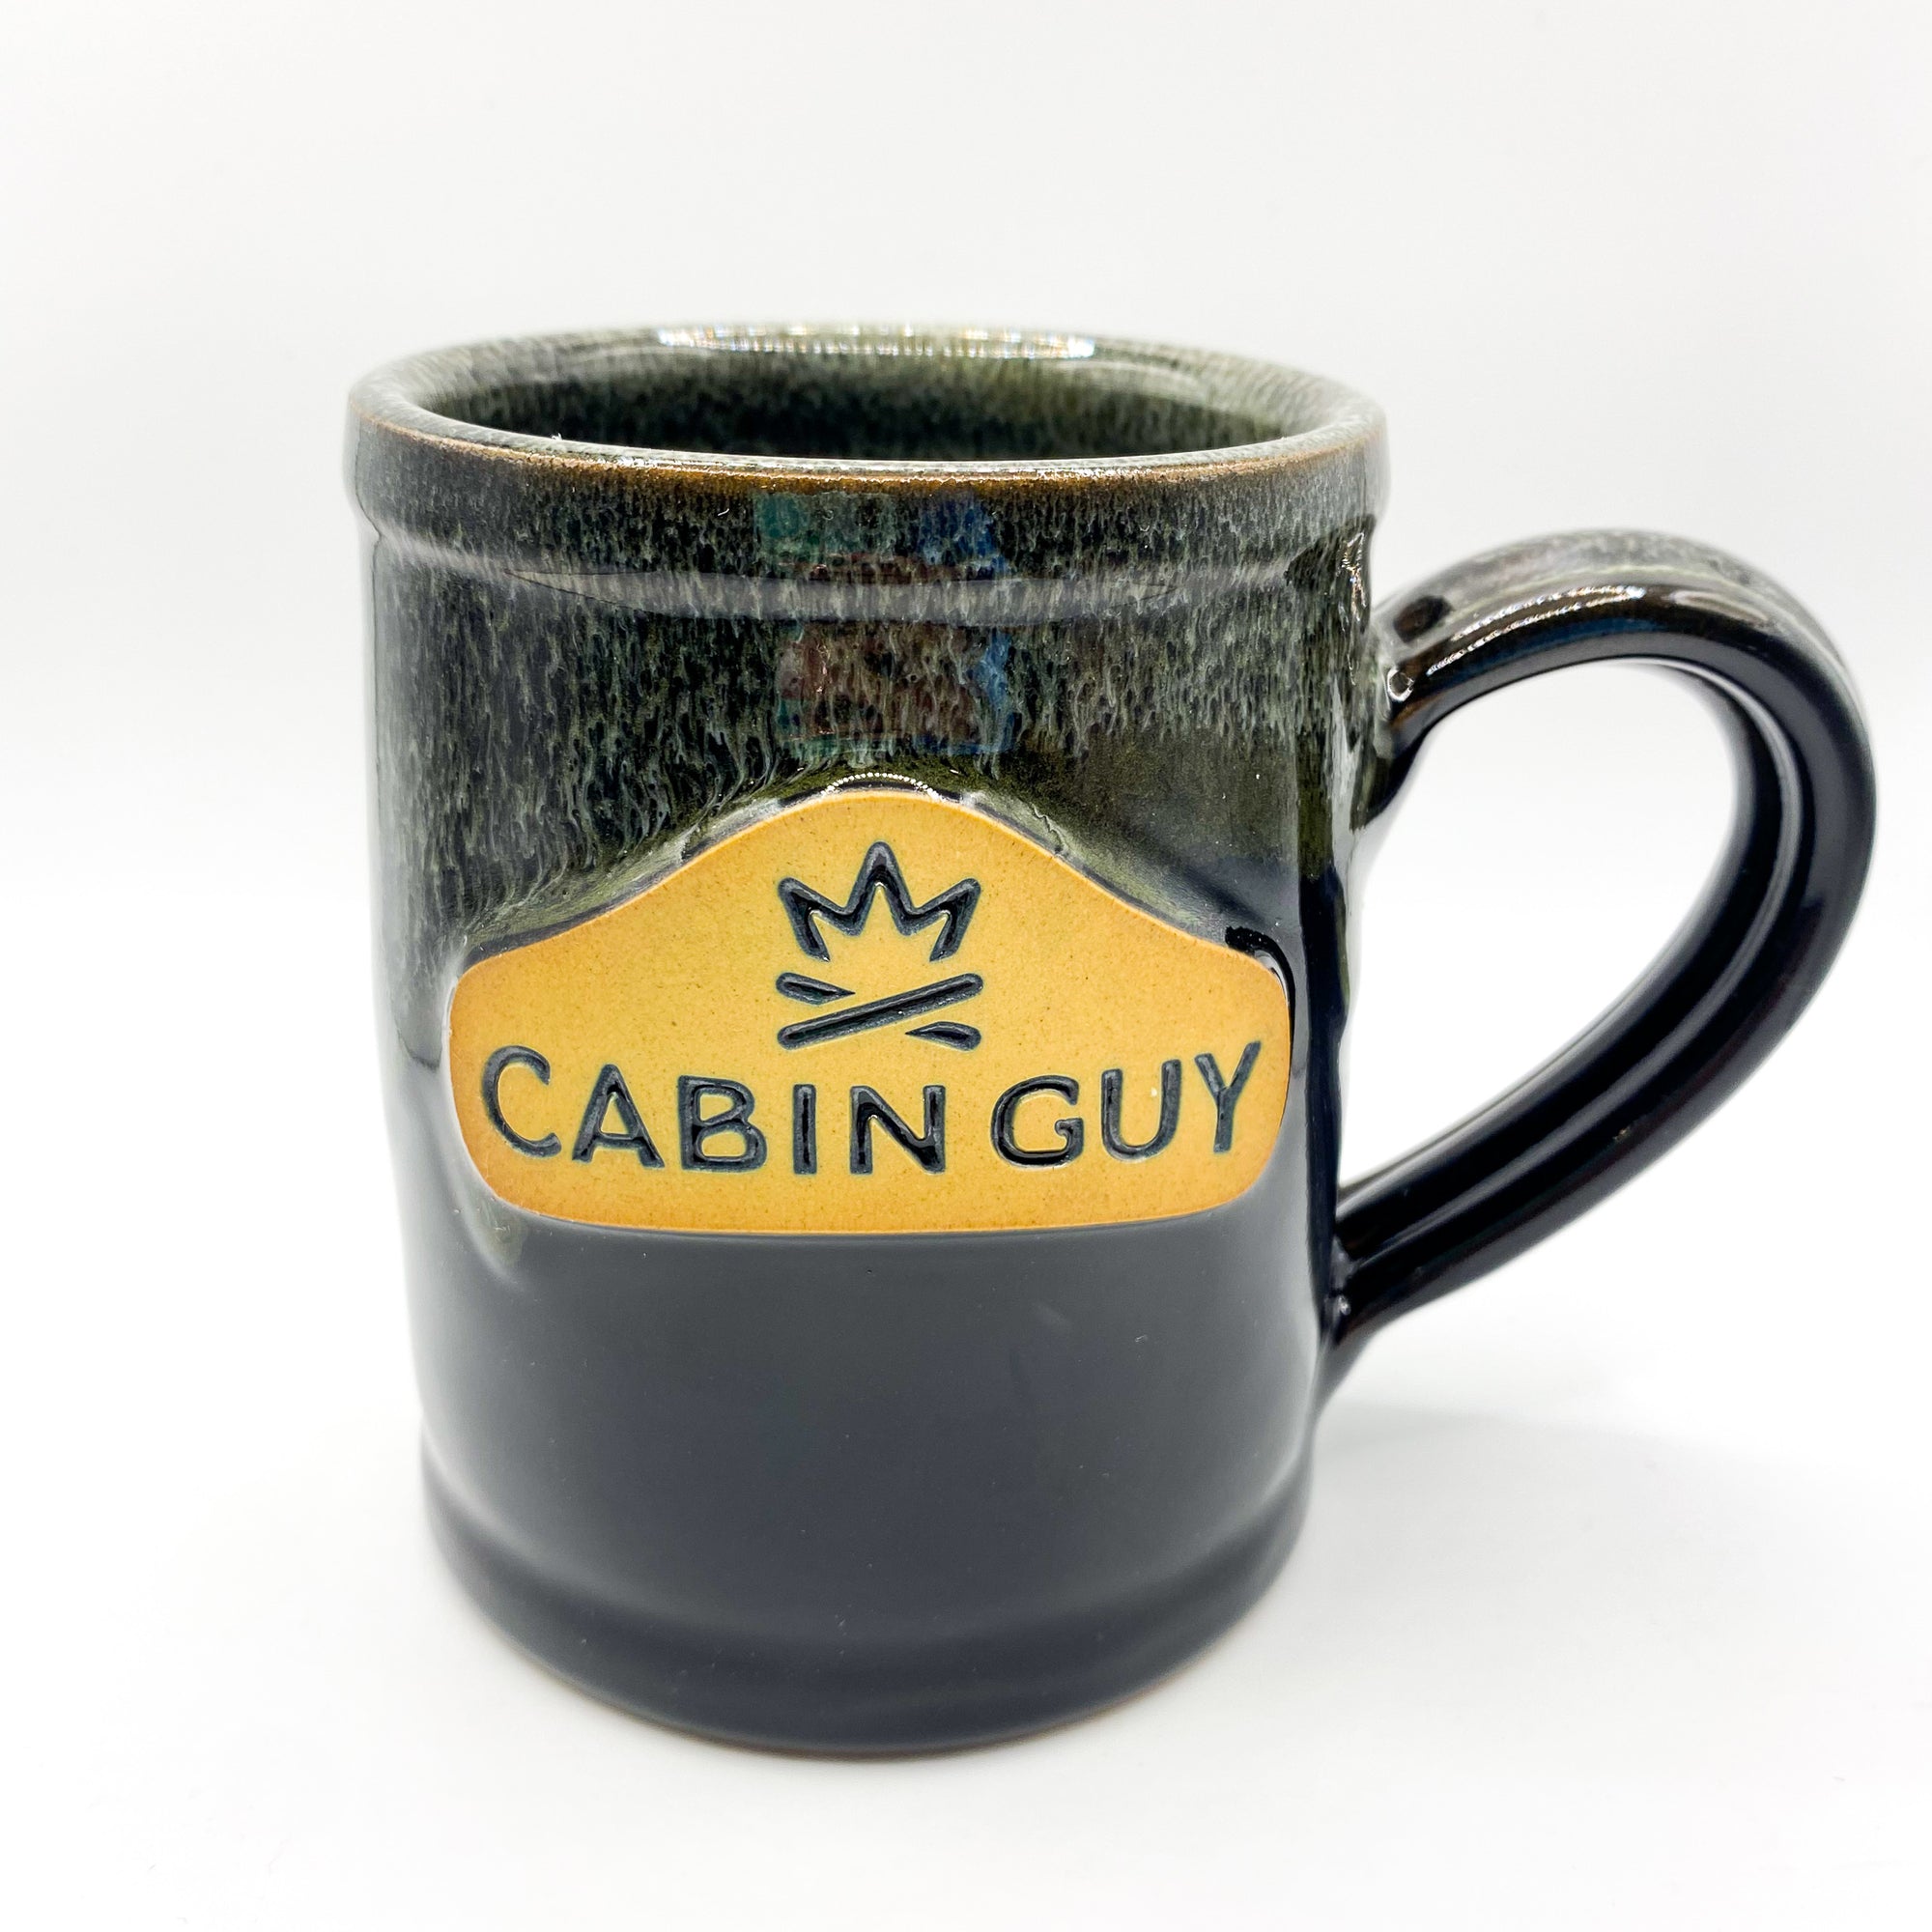 Cabin Guy | Home & Cabin